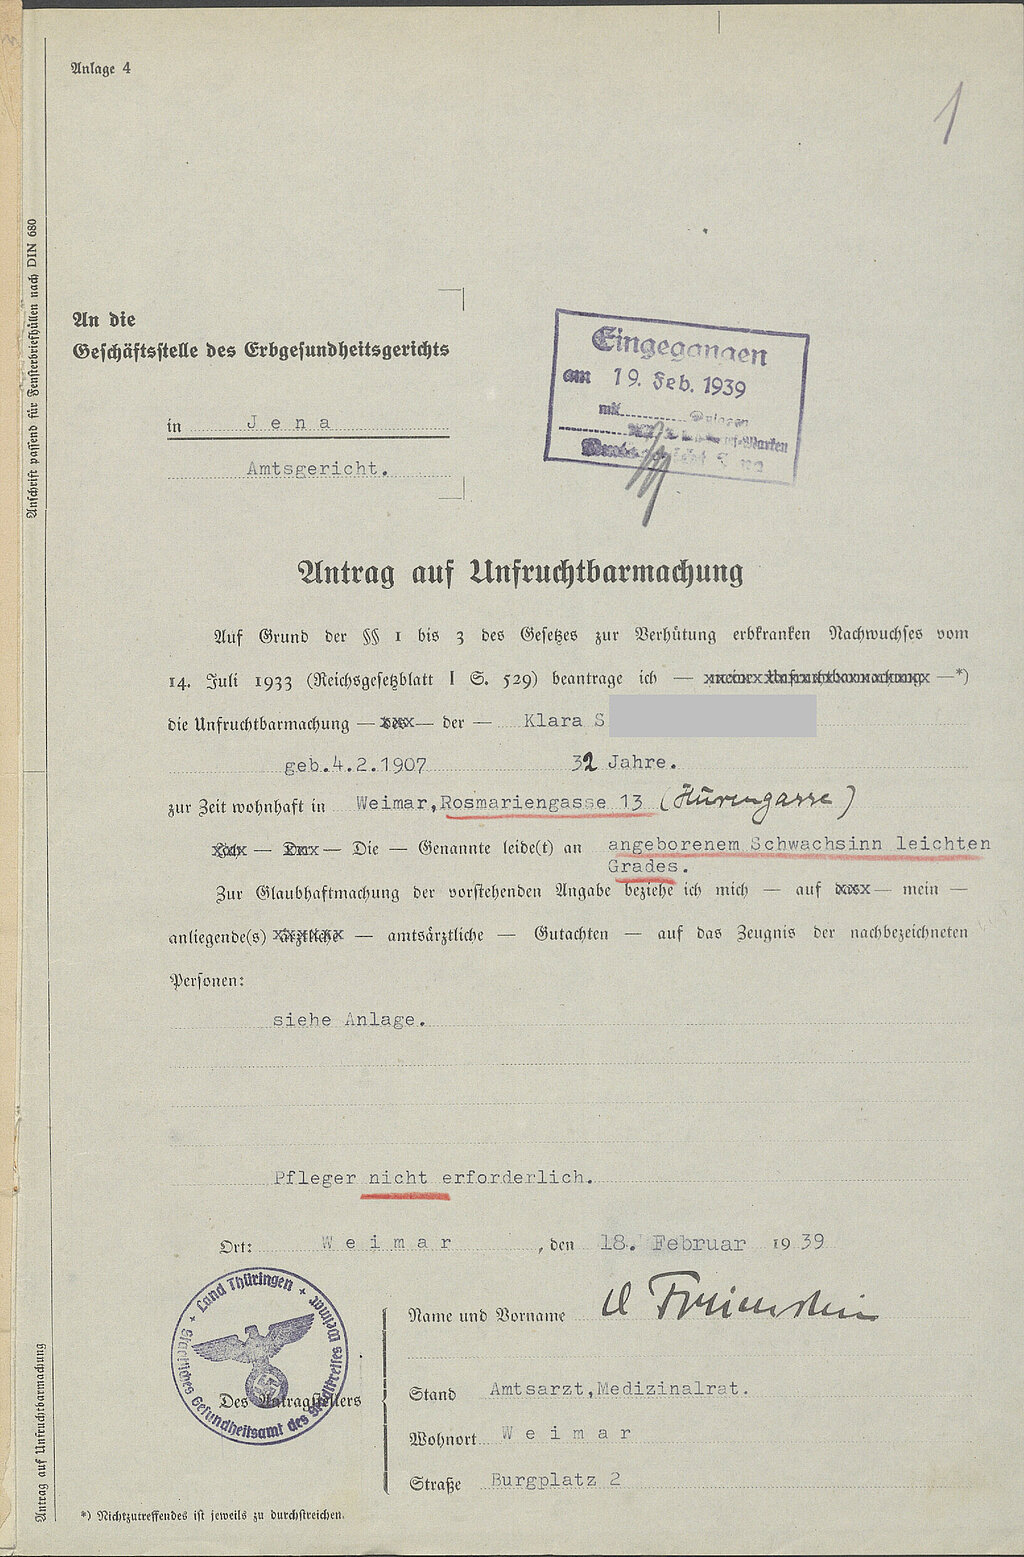 Ausgefülltes Formular zur Beantragung der Unfruchtbarmachung von Klara S., unterschrieben von Amtsarzt Freienstein. 